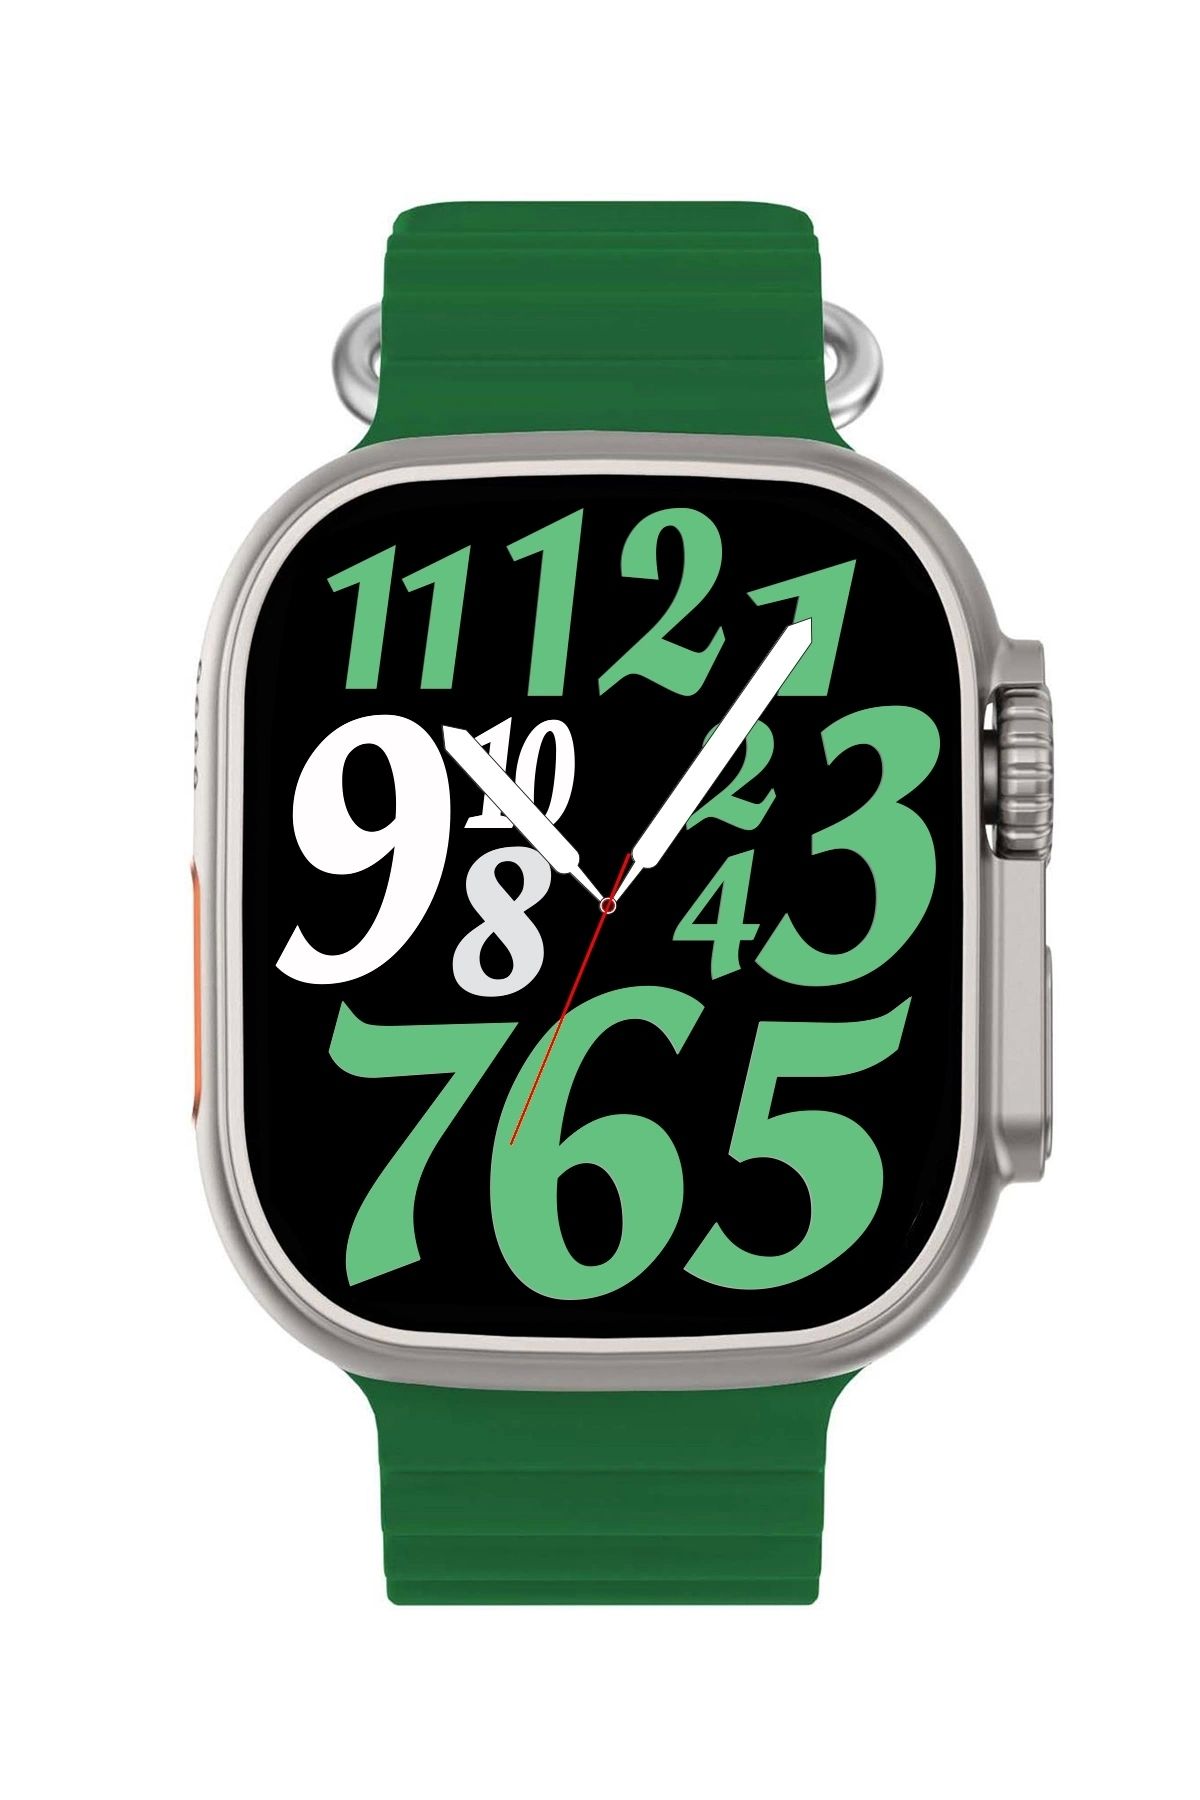 zmsmart Watch 8 Ultra Smart Watch Değiştirilebilir Kordon Akıllı Saat Zmsw8 Gümüş-yeşil